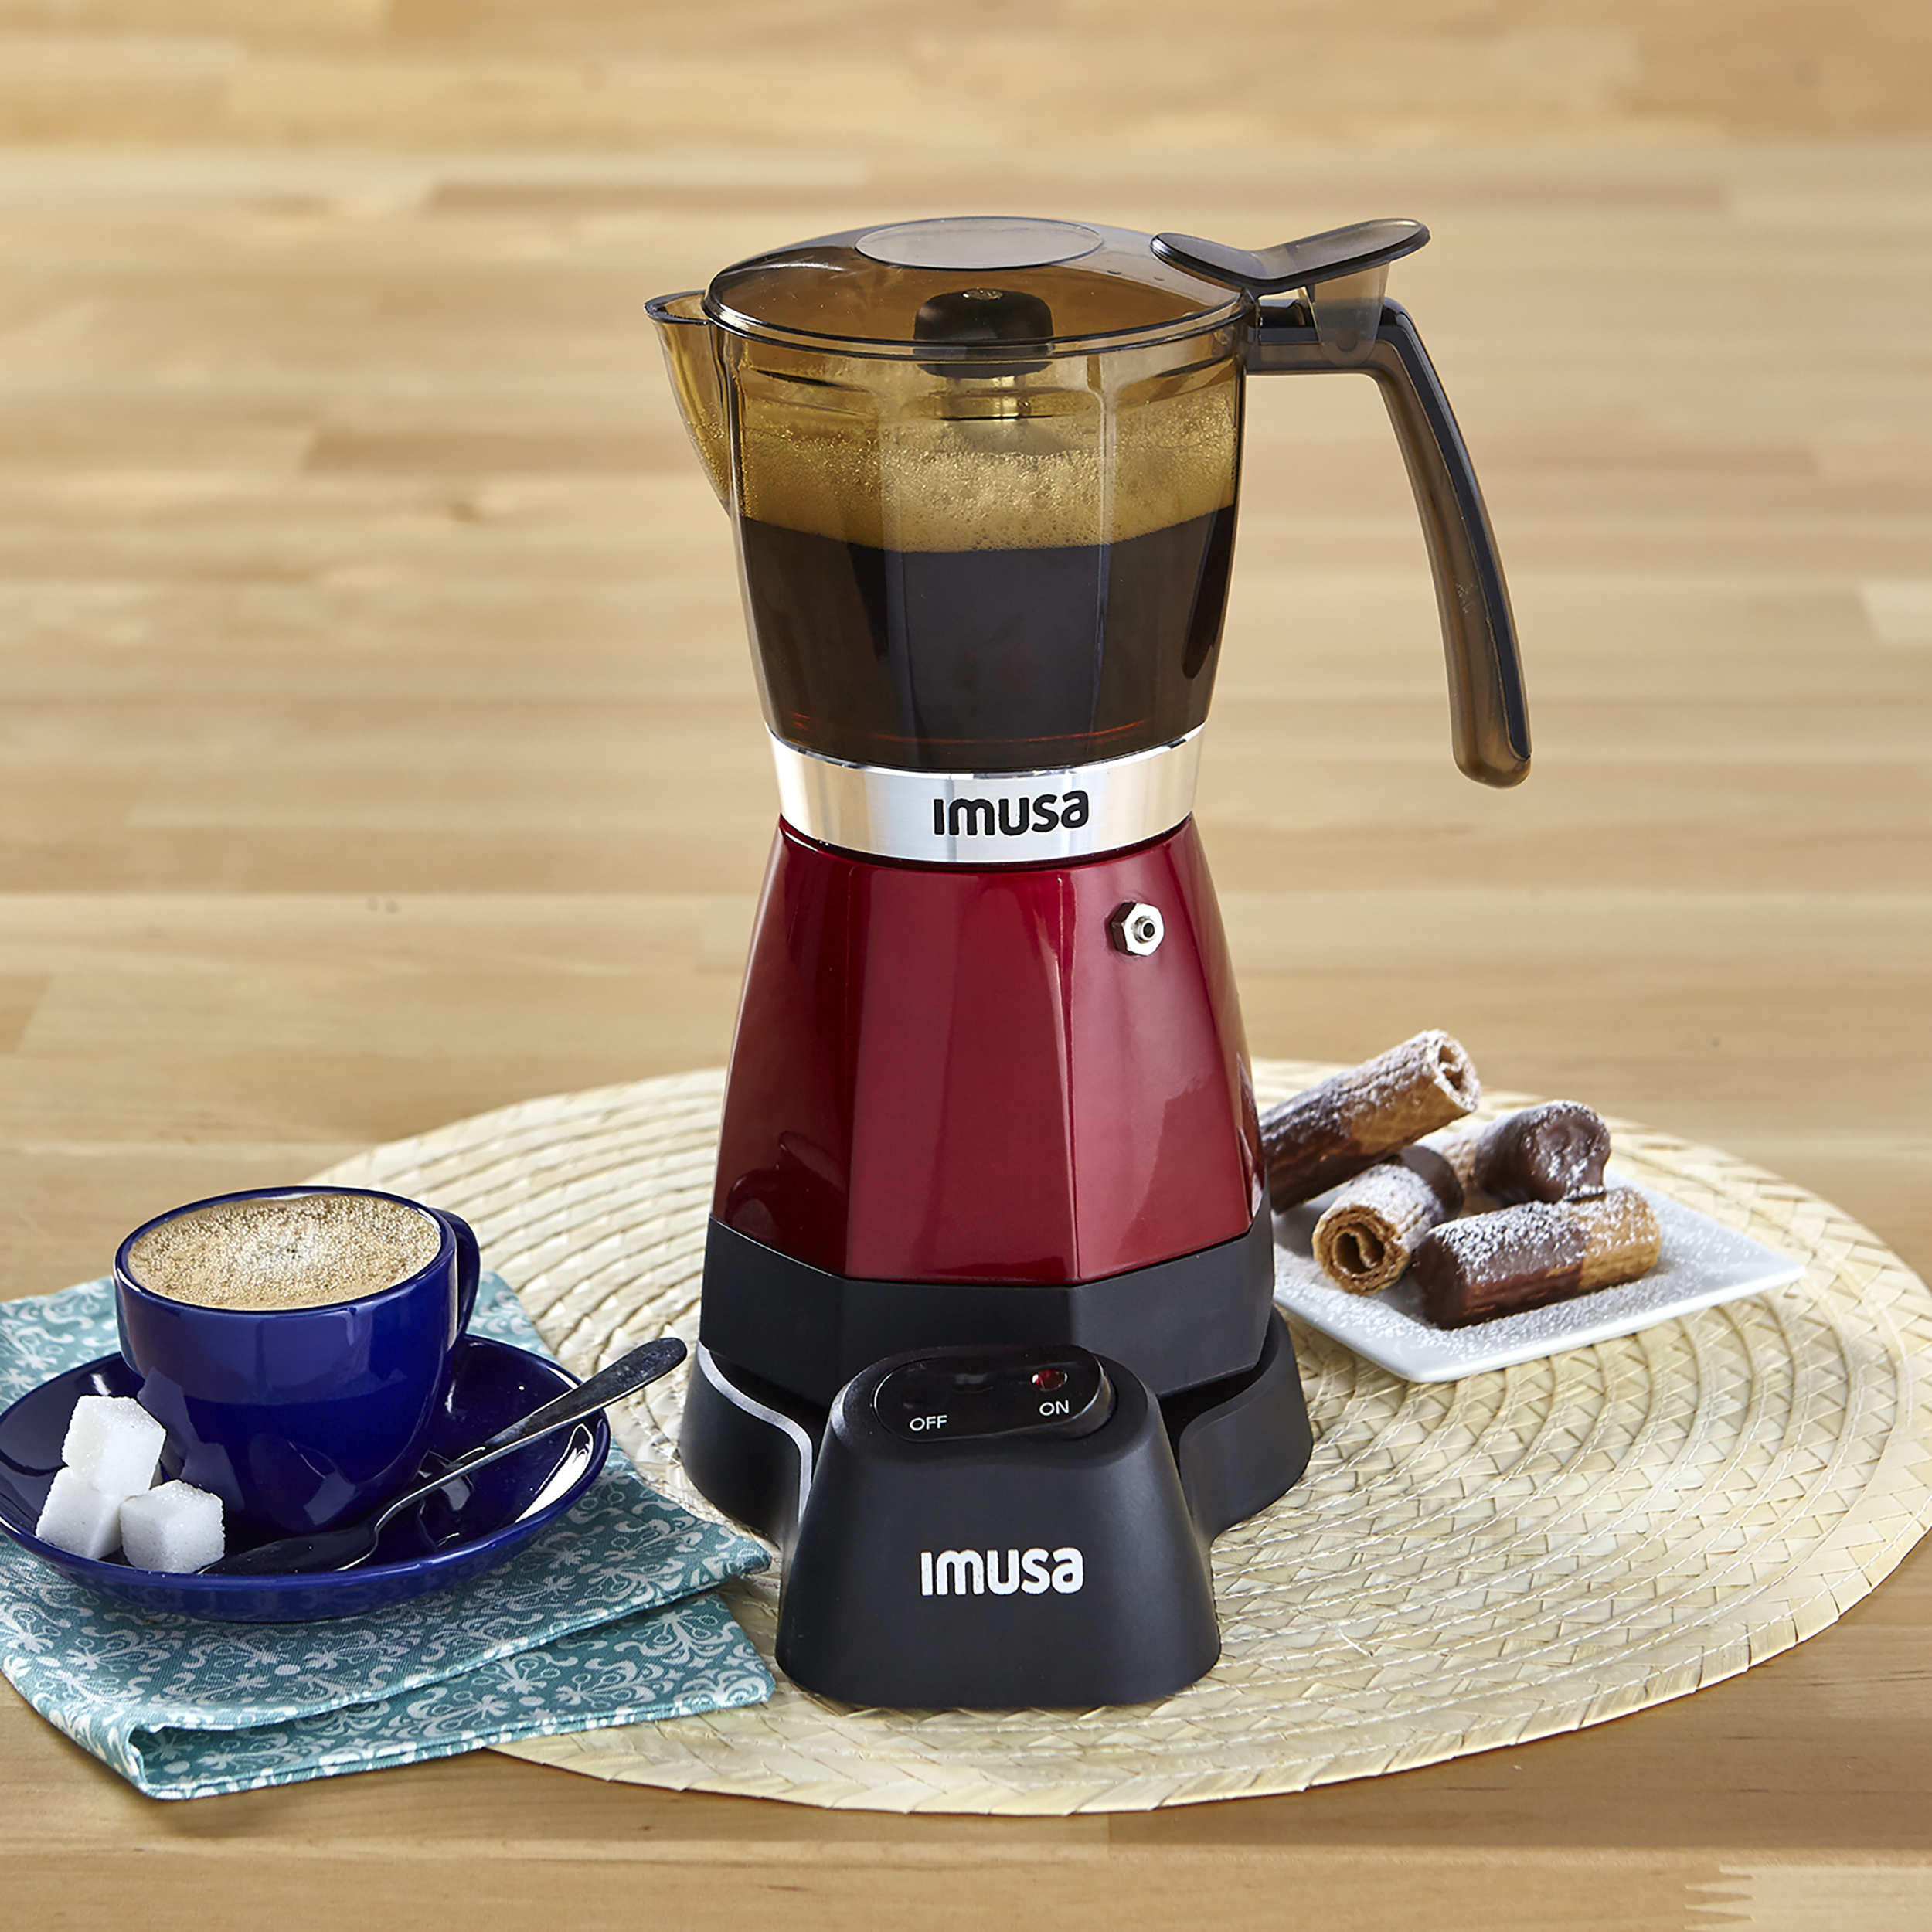 IMUSA 4 Cup Electric Espresso/Cappuccino Maker 800 Watts - Black